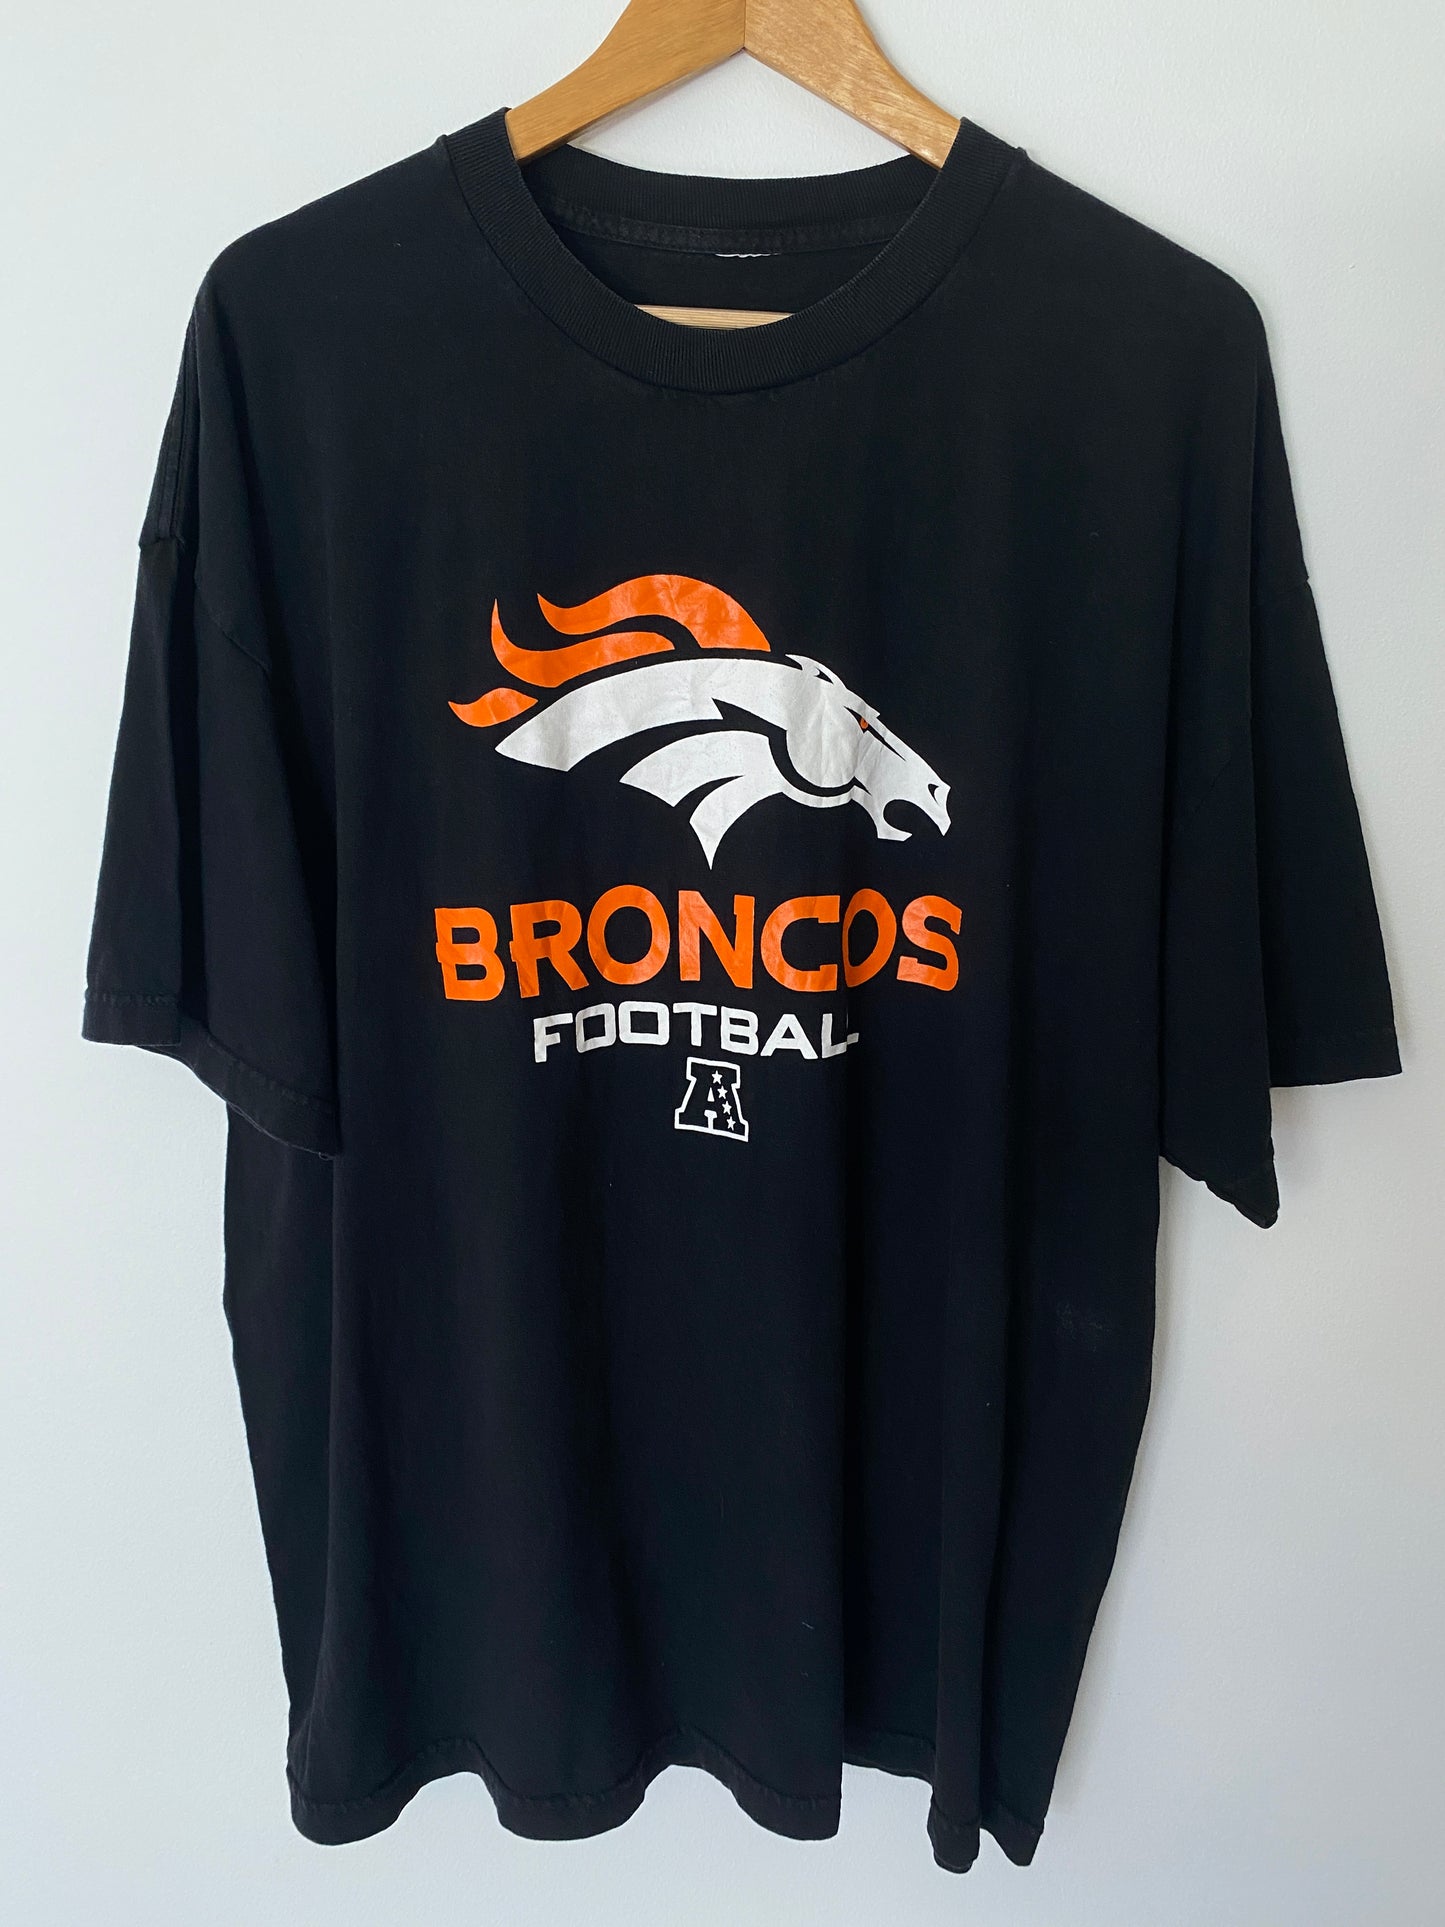 Denver Broncos Football T-Shirt - XL